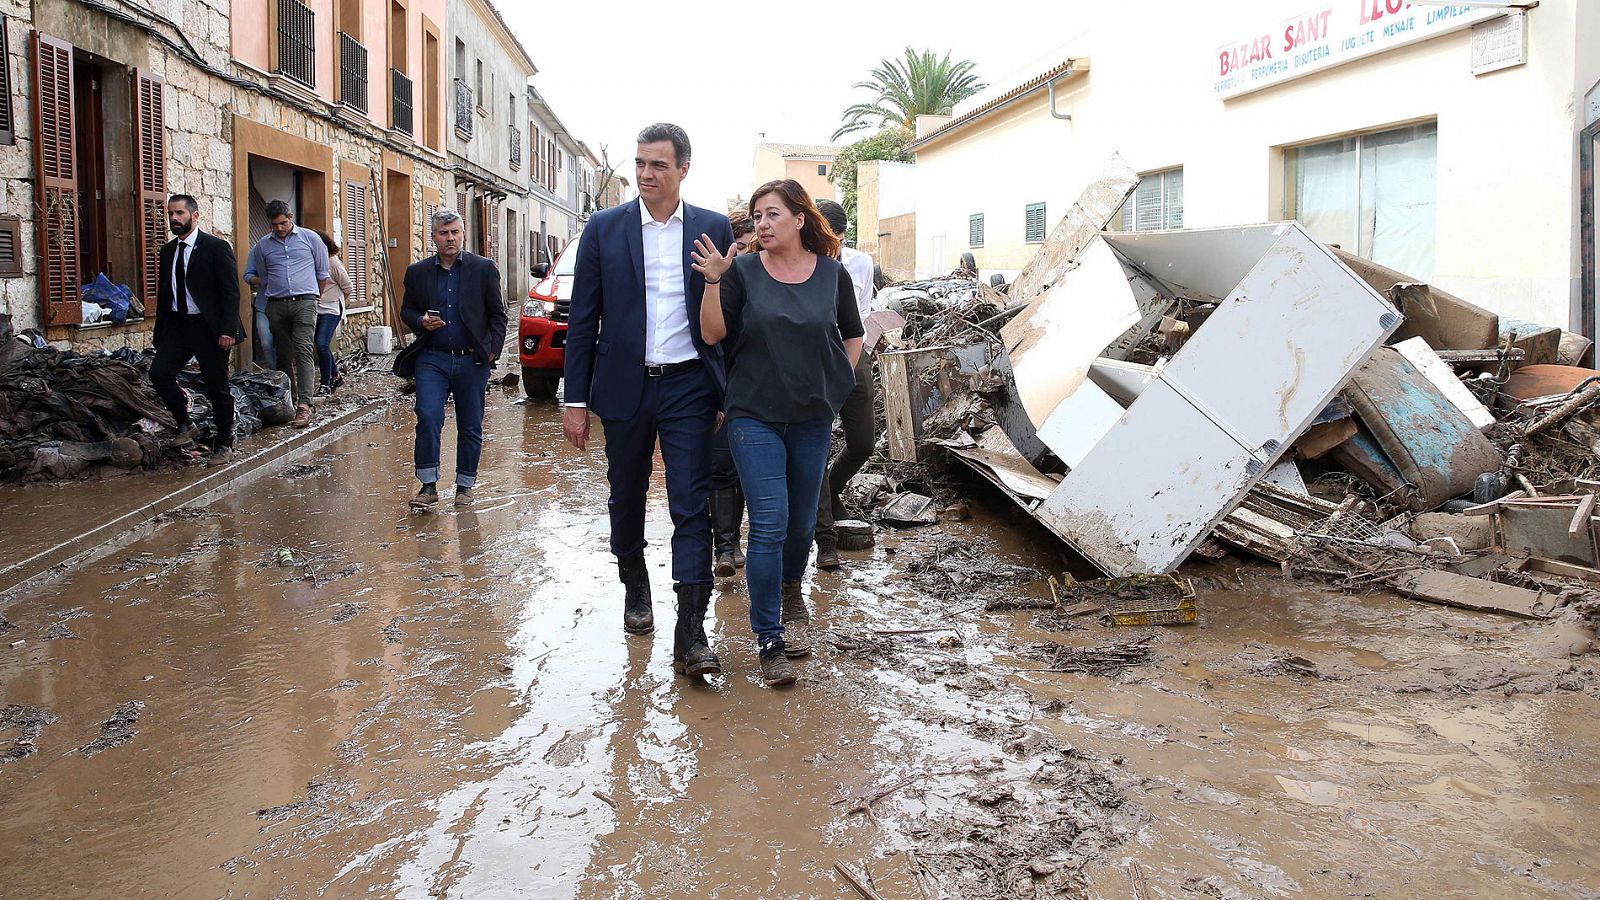 Inundaciones en Mallorca: el Gobierno declarará zona catastrófica el área afectada